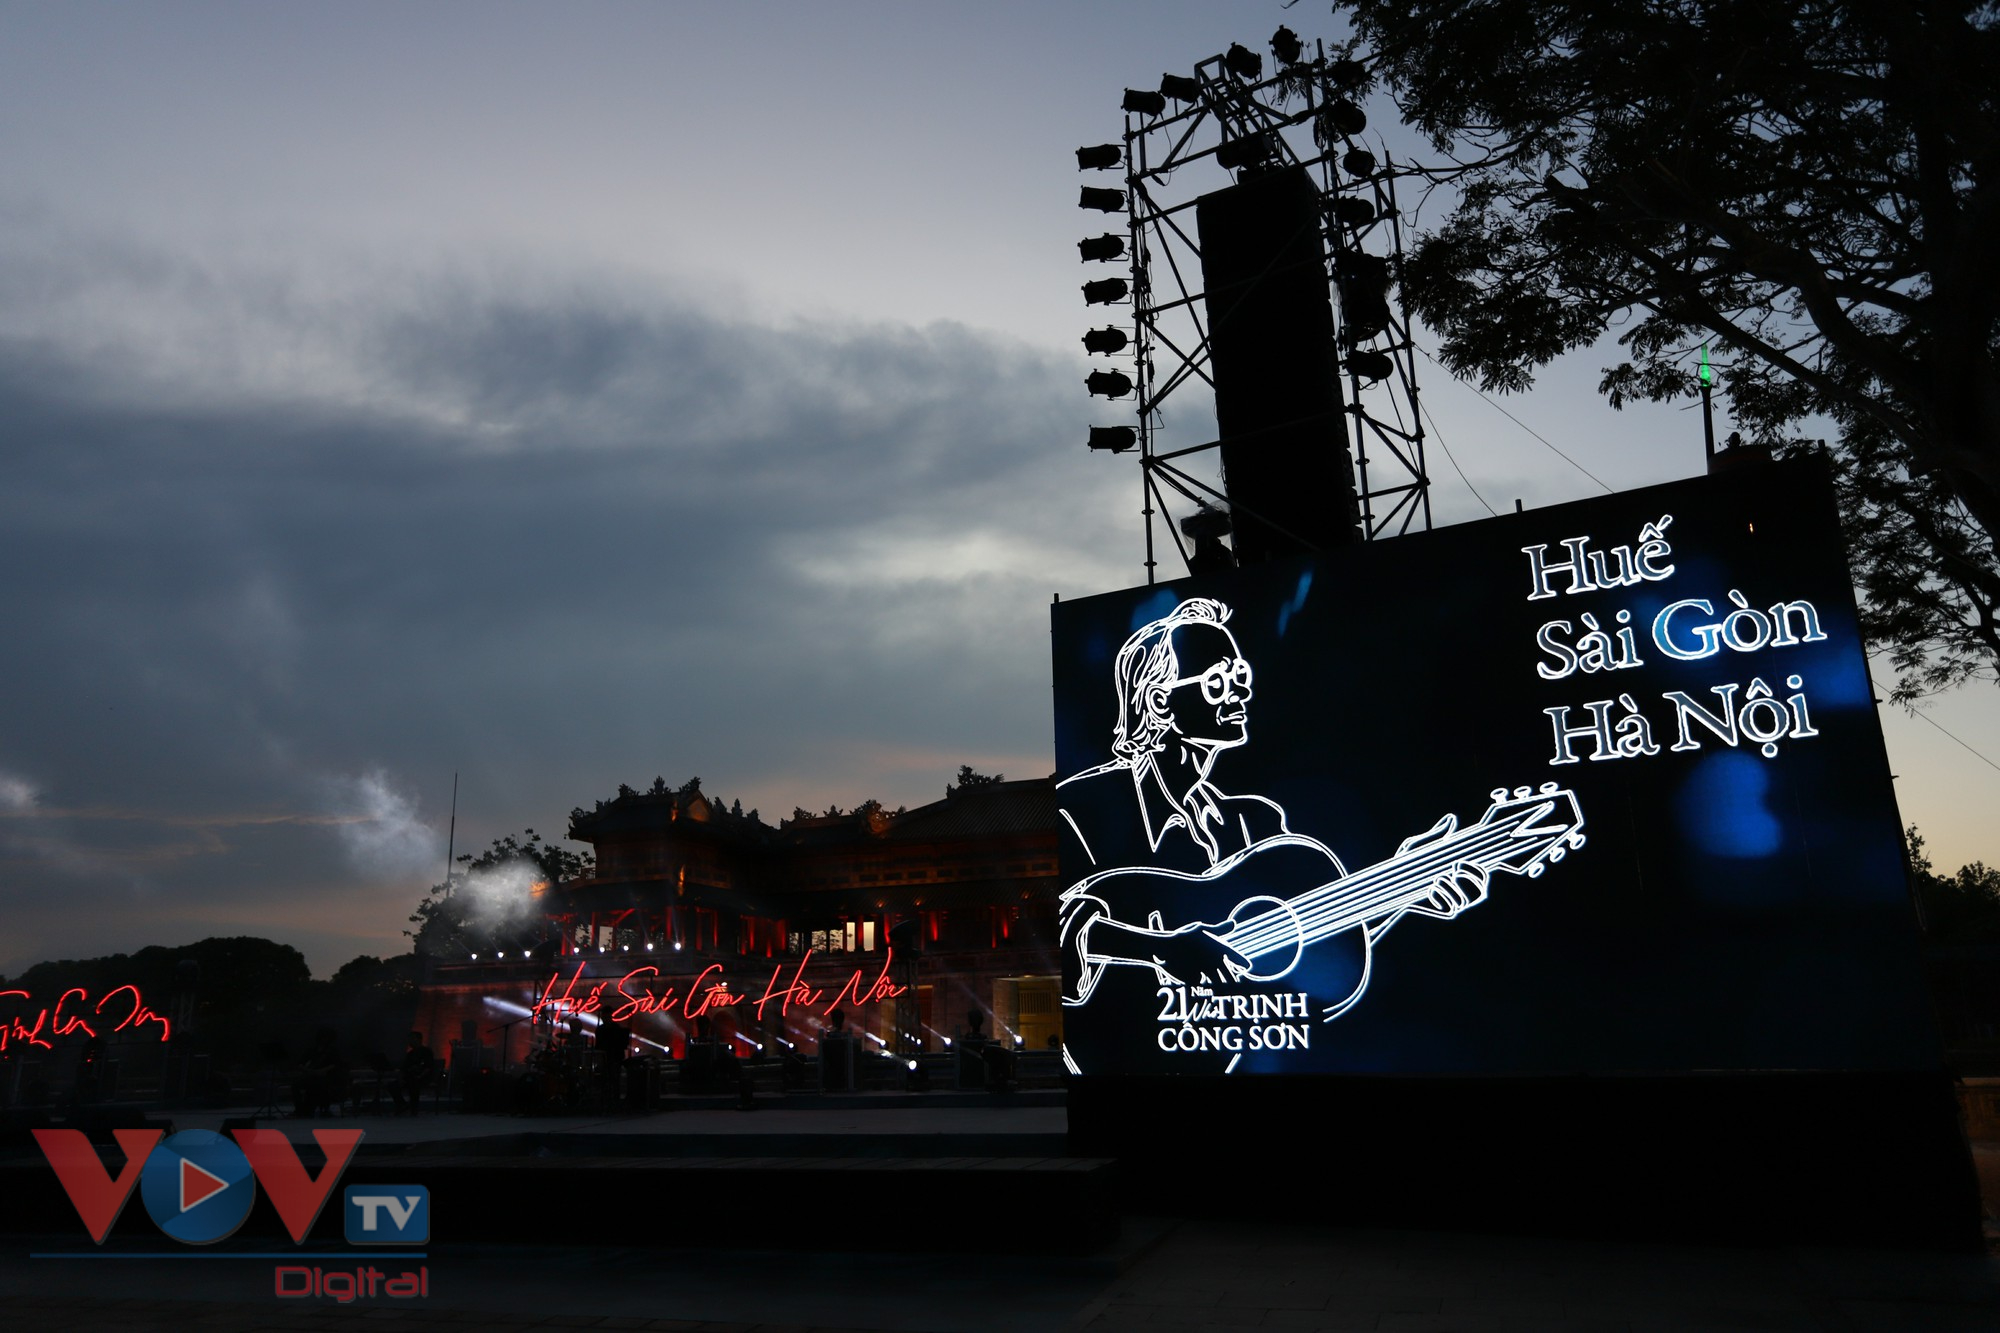 Tuần lễ Festival Huế 2022: Đêm nhạc Trịnh Công Sơn 'Huế - Sài Gòn - Hà Nội' - Ảnh 6.